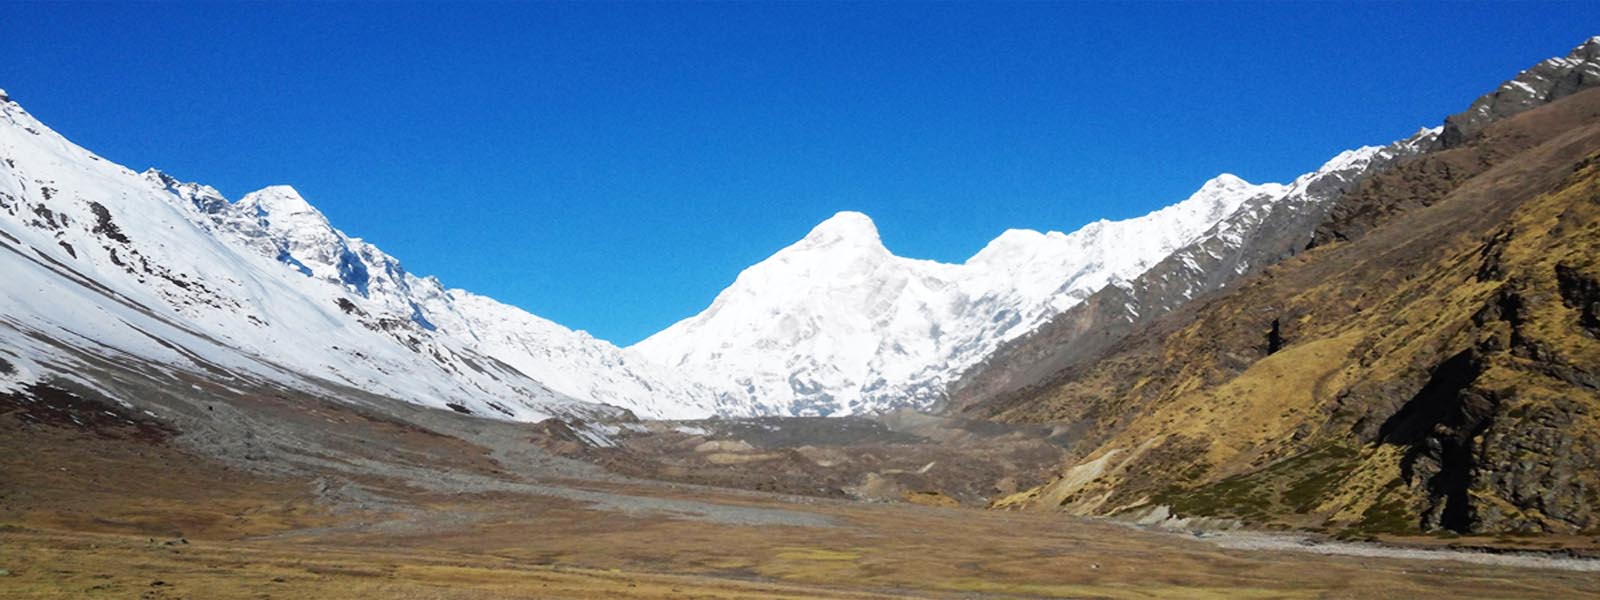  Nanda Devi Milam Glacier Trek introduction 